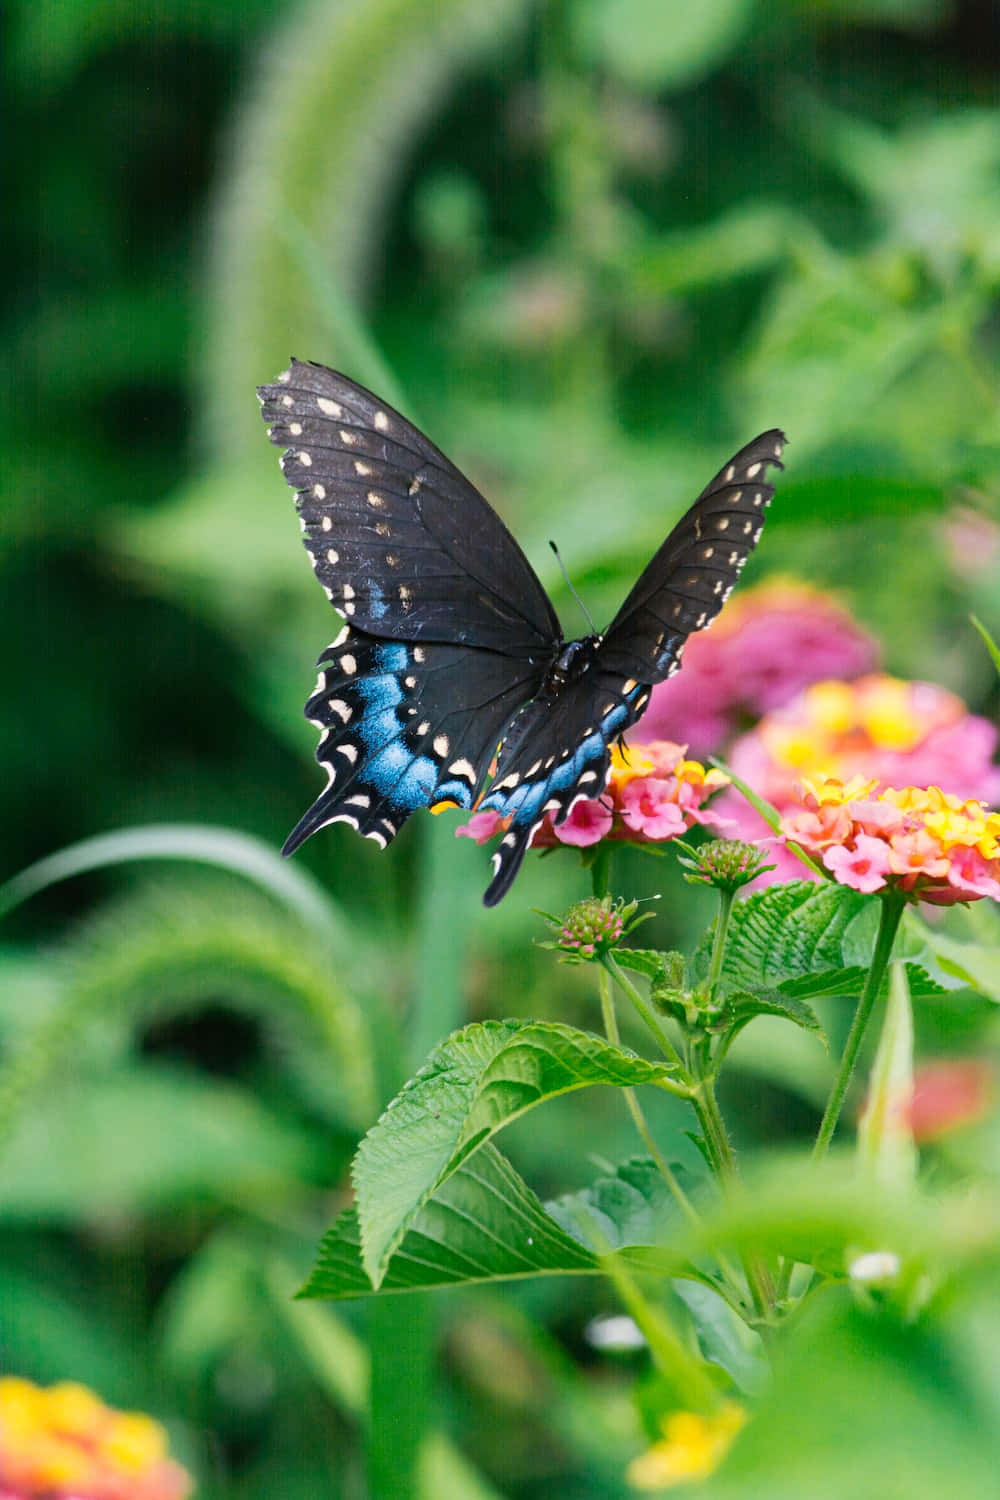 "Butterfly Beauty"